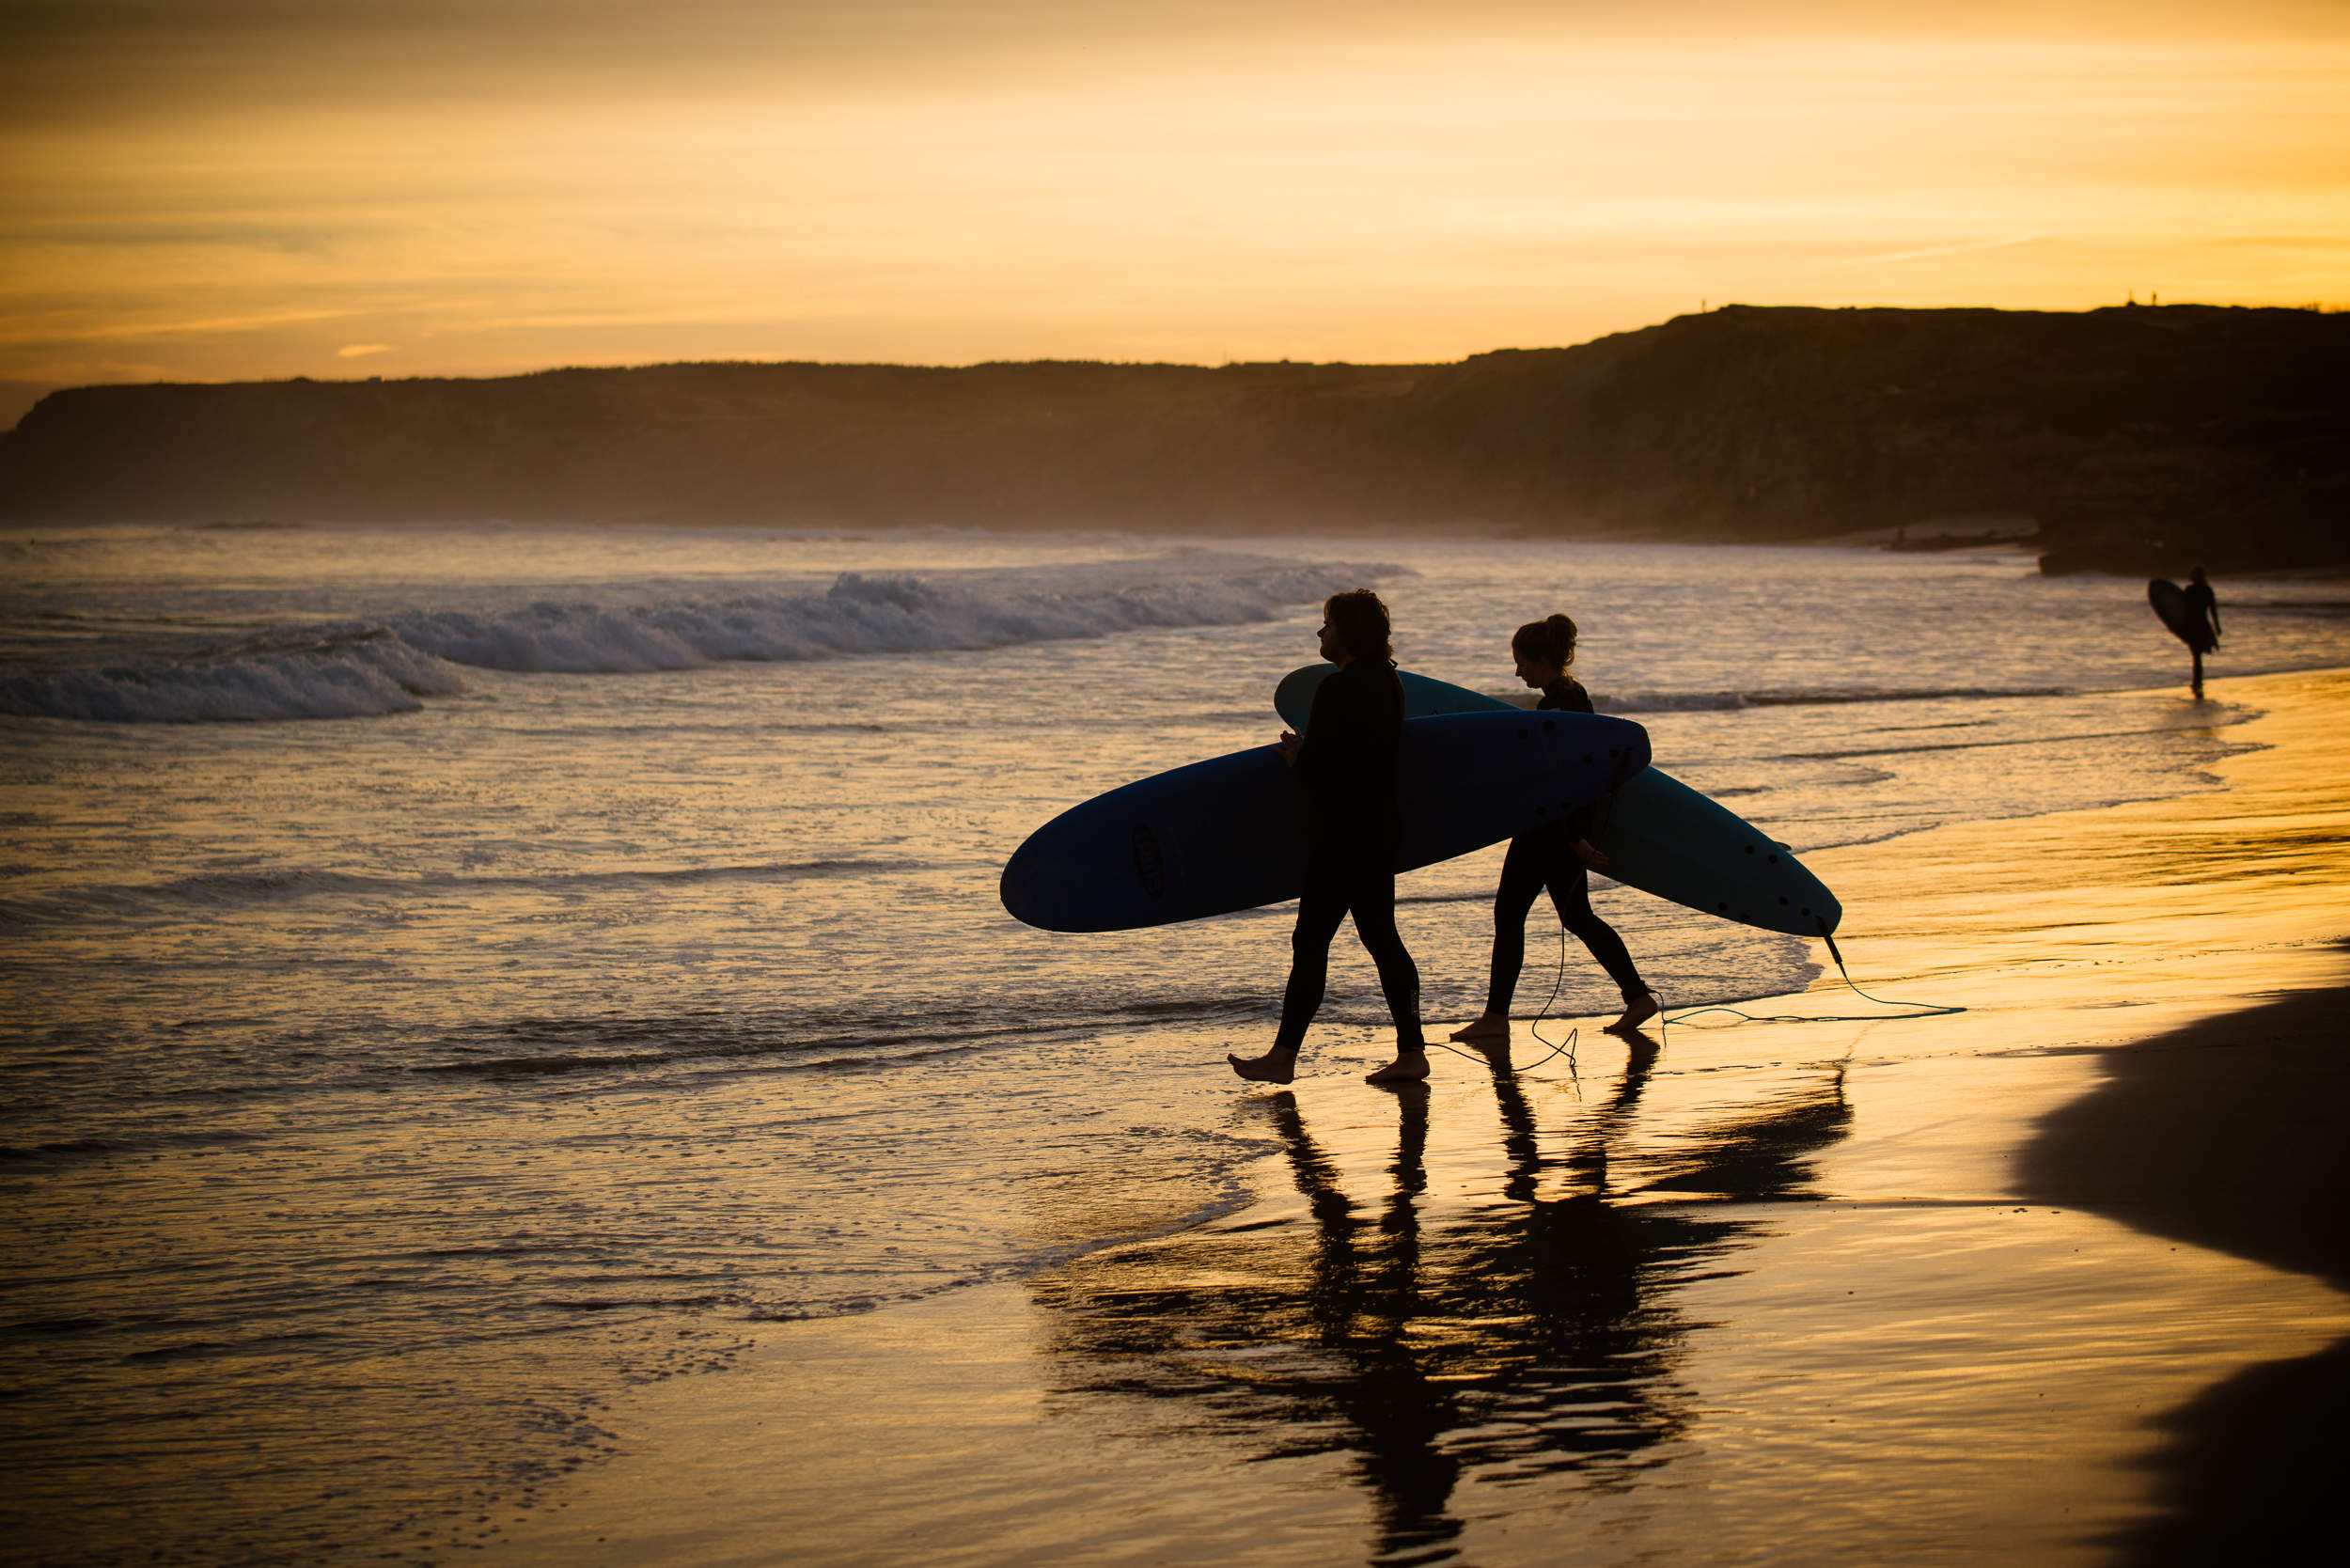 Tavla på surfare i soluppgång